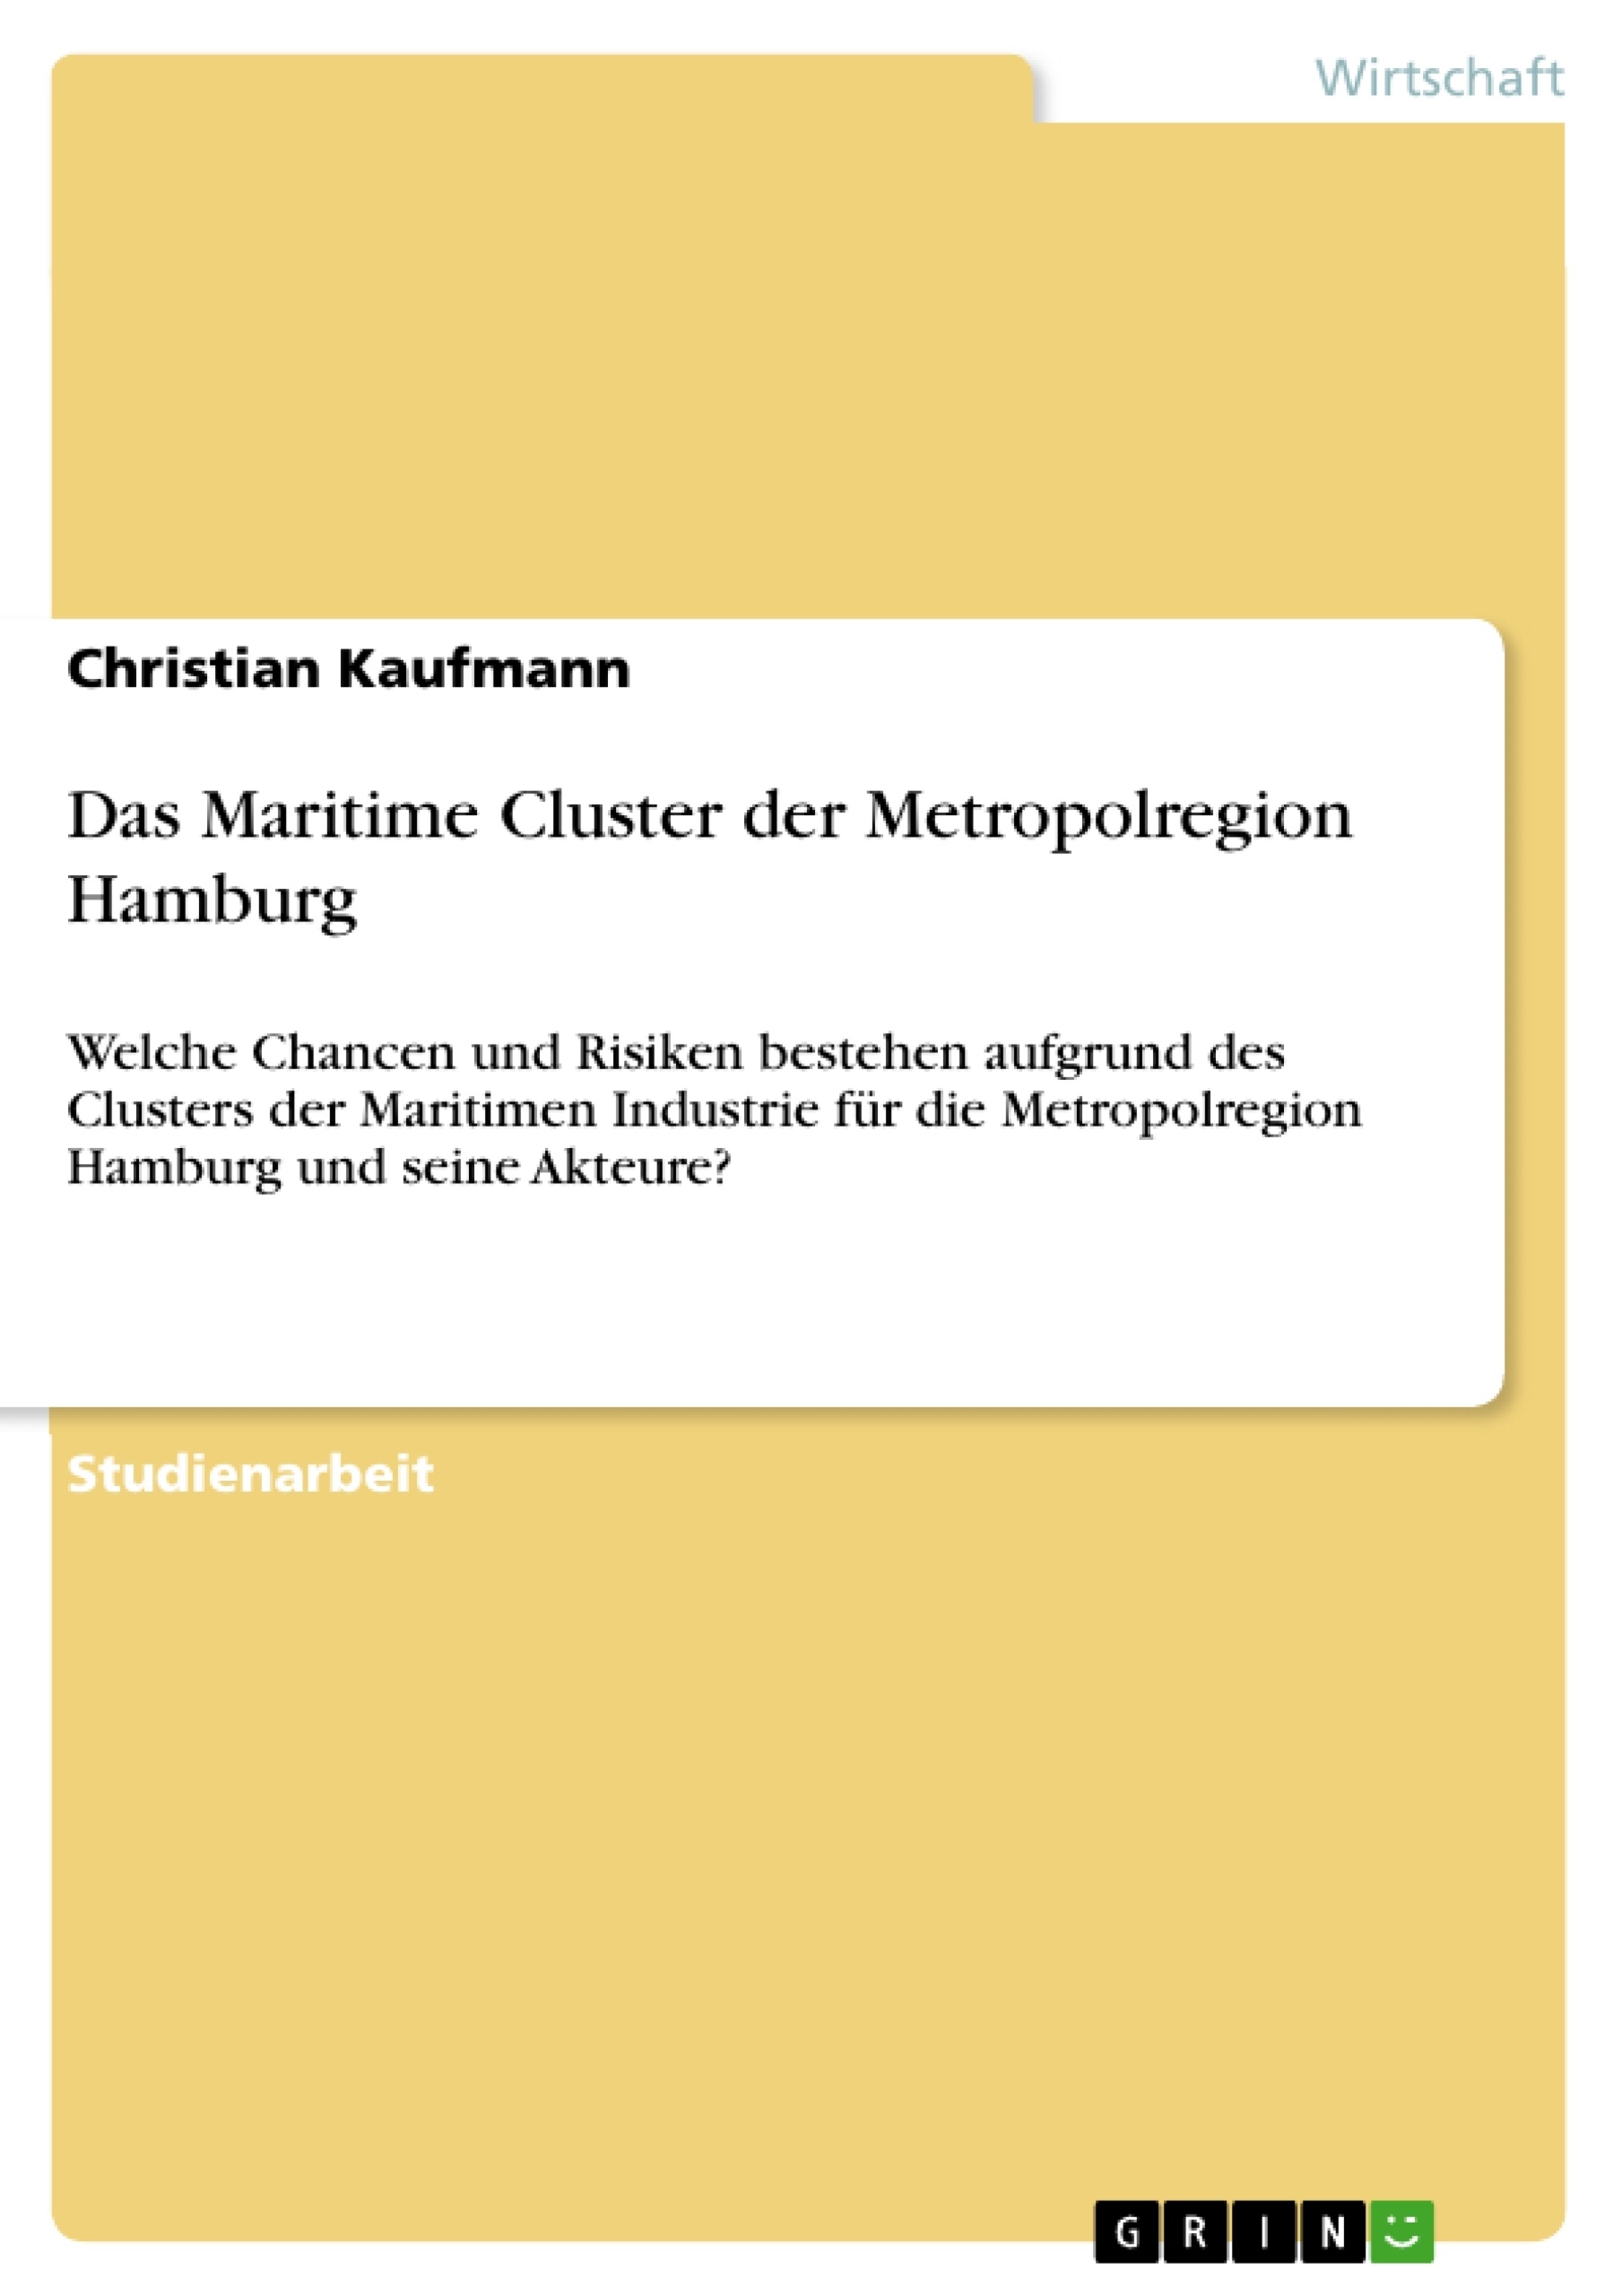 Title: Das Maritime Cluster der Metropolregion Hamburg